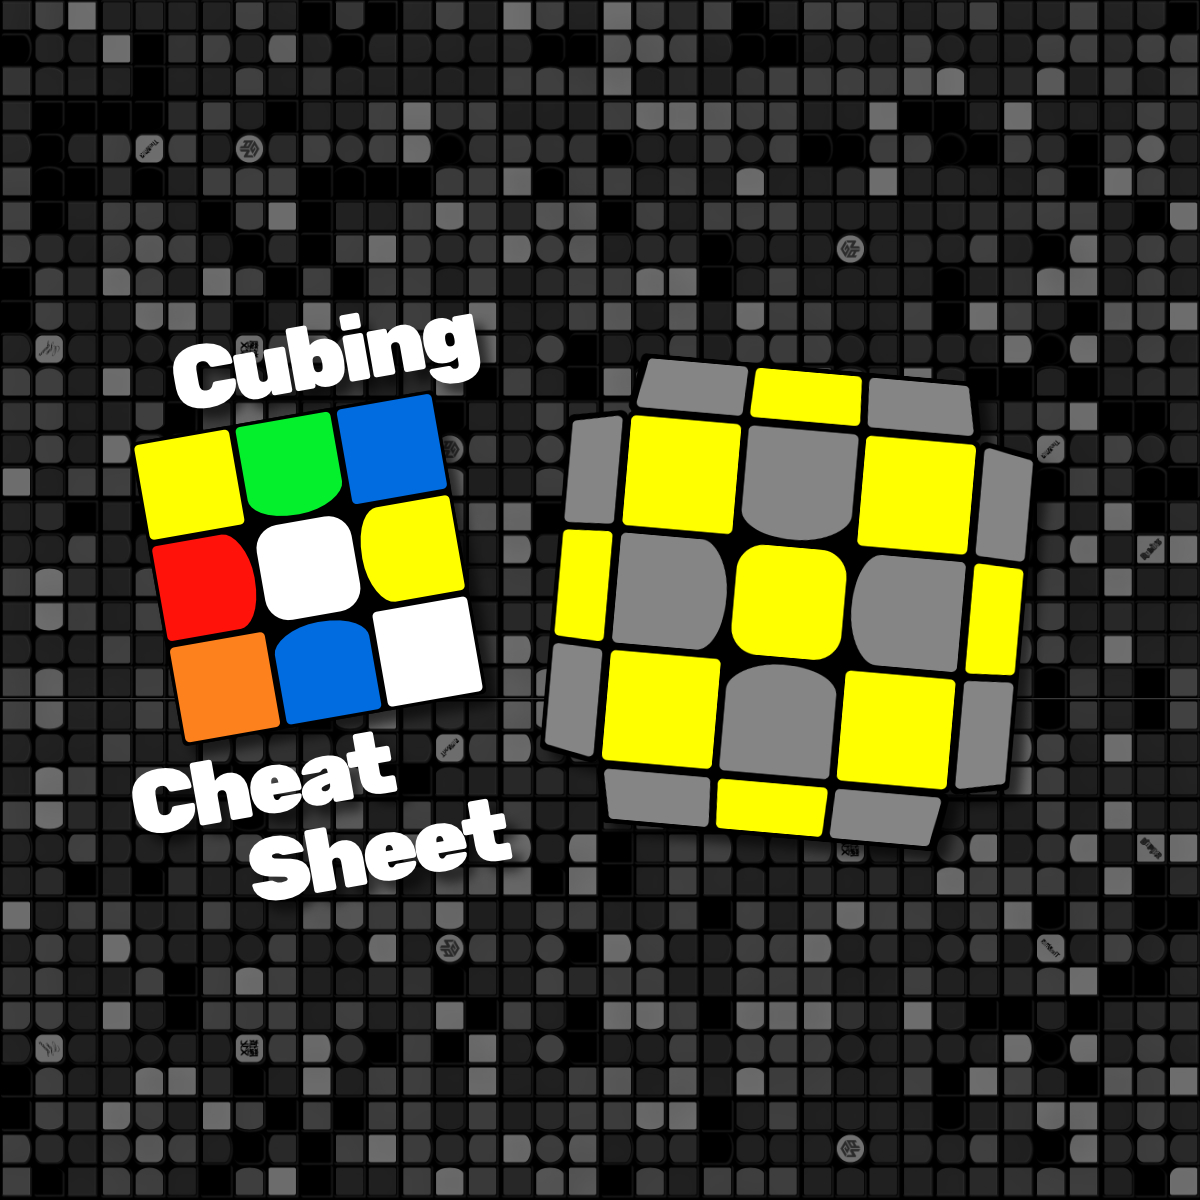 2loll 2 Look Oll Algorithms 3x3 Cfop Dan S Cubing Cheat Sheet App